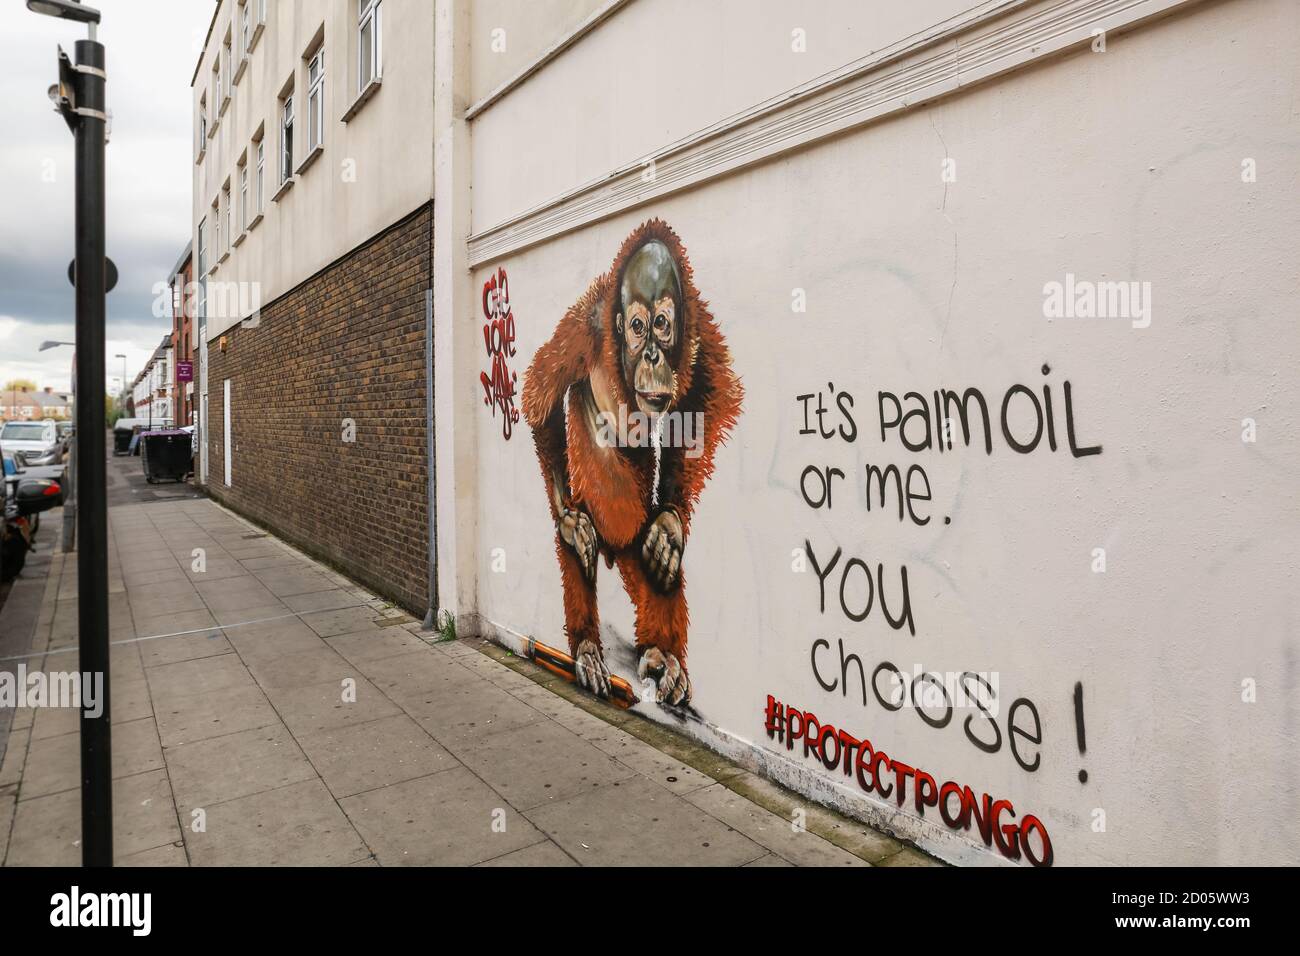 Londres, Royaume-Uni. 01 octobre 2020. Street Art Londres. Fresque « Protect Pongo » de Louis Masai. Vert bois, Haringey. Crédit: Waldemar Sikora Banque D'Images